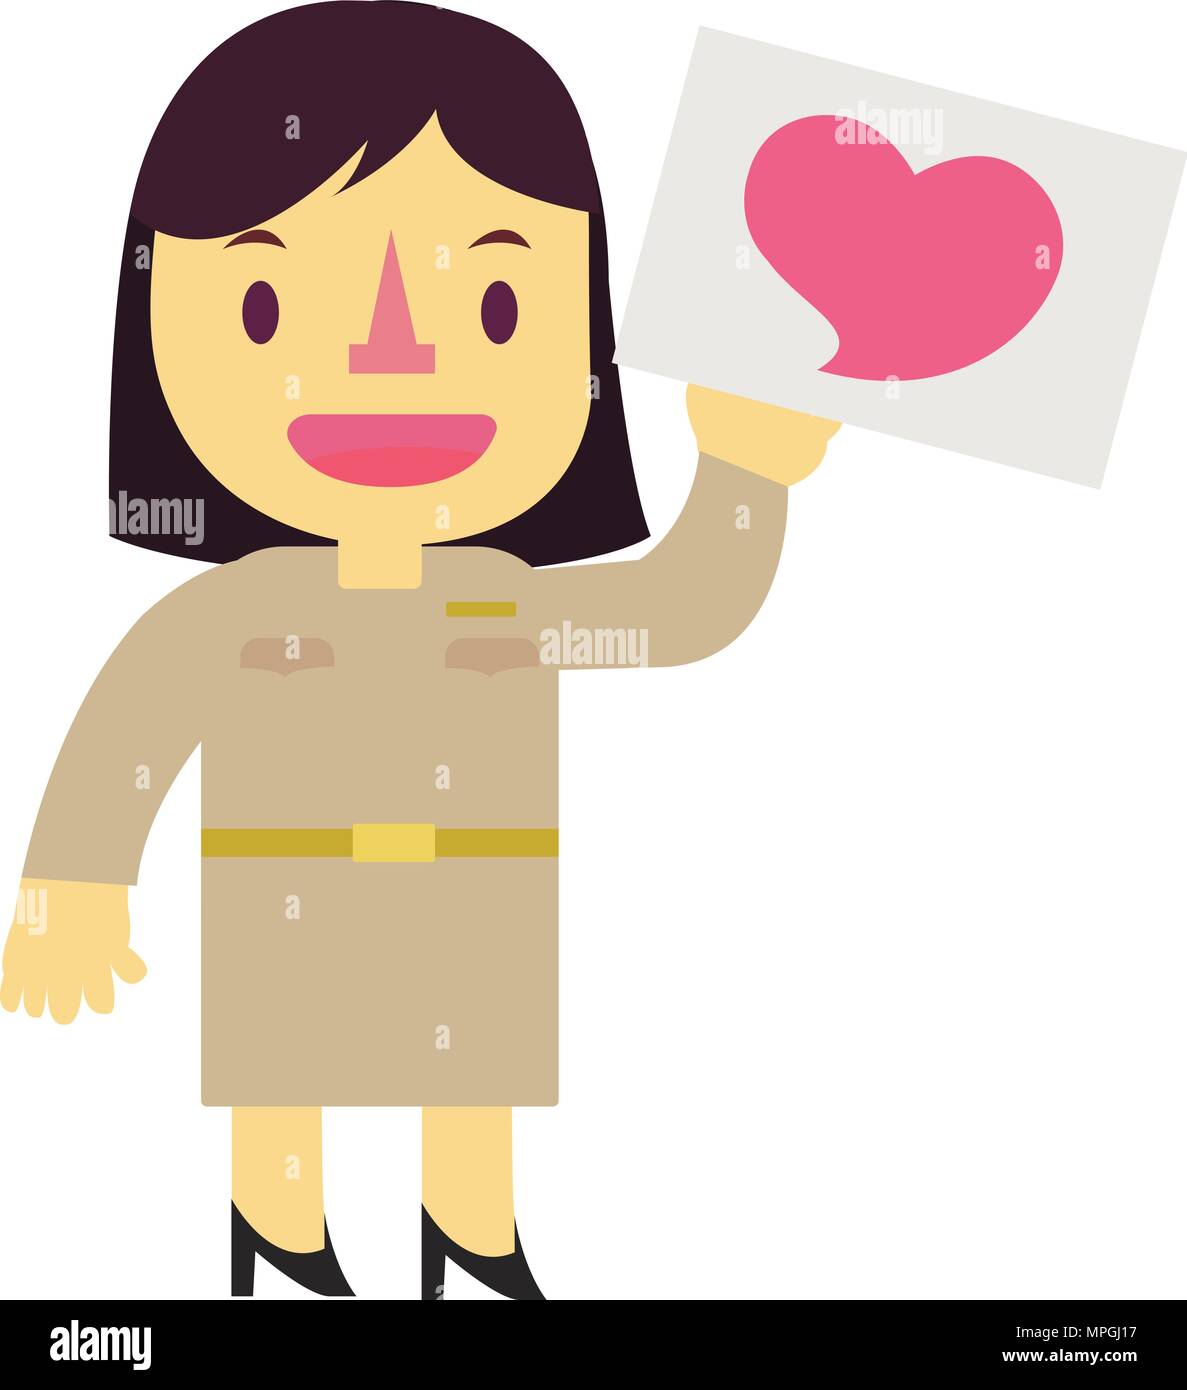 Thai personnage conception de montrer l'amour avec femme gouvernement étiquette sur fond blanc.Girl personnage avec coeur rose Illustration de Vecteur